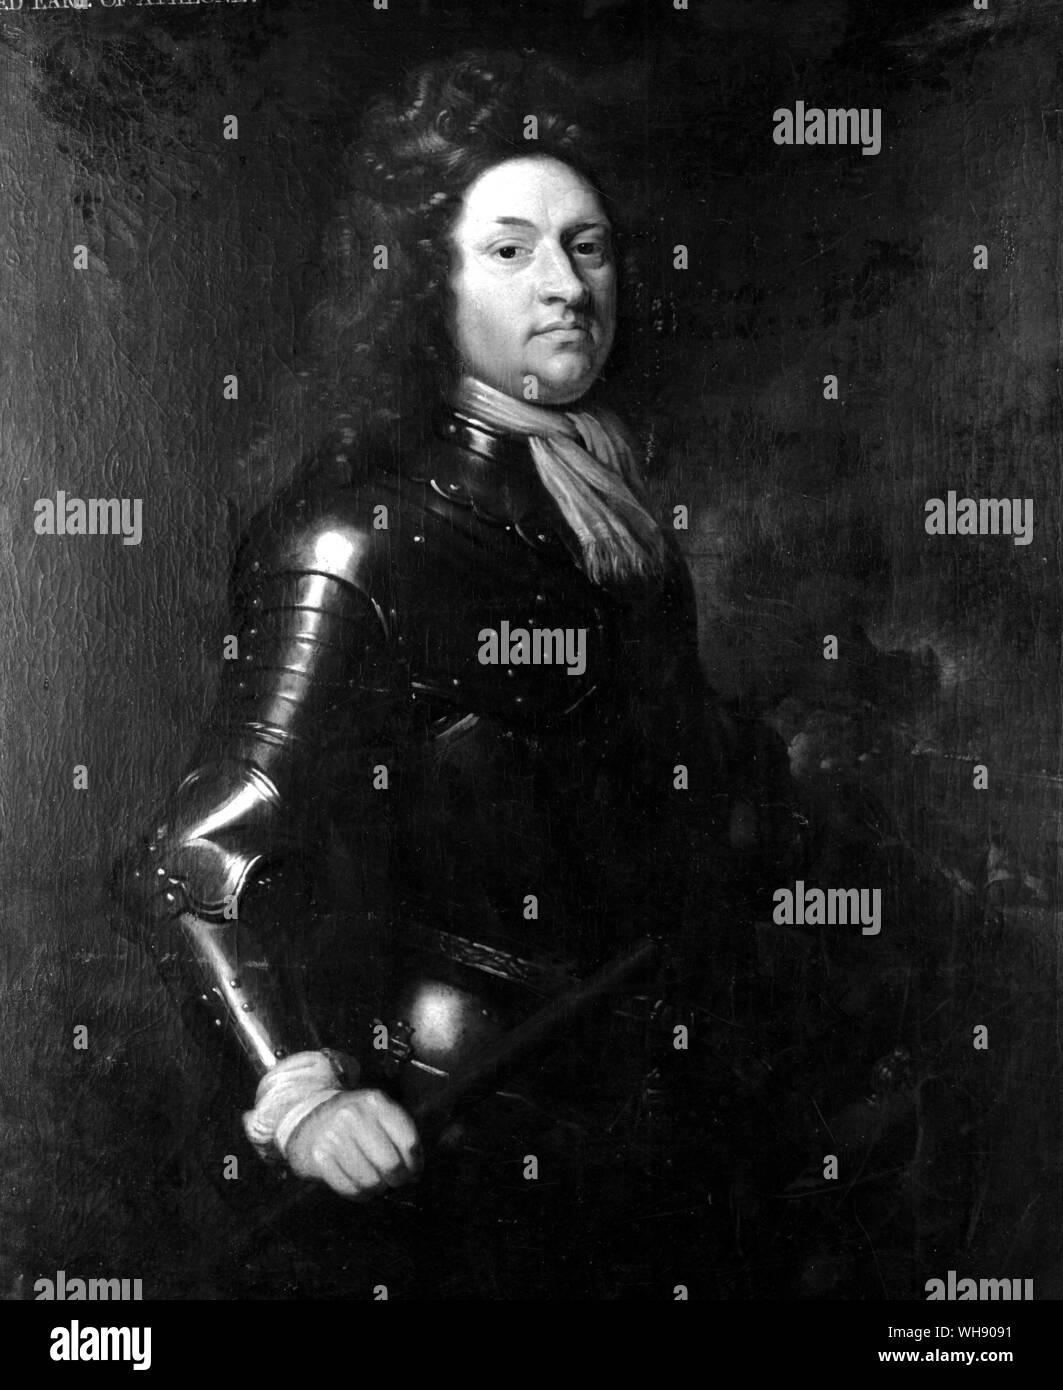 Godart, Baron van Reede-Ginckel, comte d'Athlone (1644-1703). jusqu'à l'arrivée de Marlborough, le commandant par intérim de l'armée alliée, qui avait presque été pris et détruit par les Français en vertu de Boufflers. Tableau par Sir Godfrey Kneller Banque D'Images